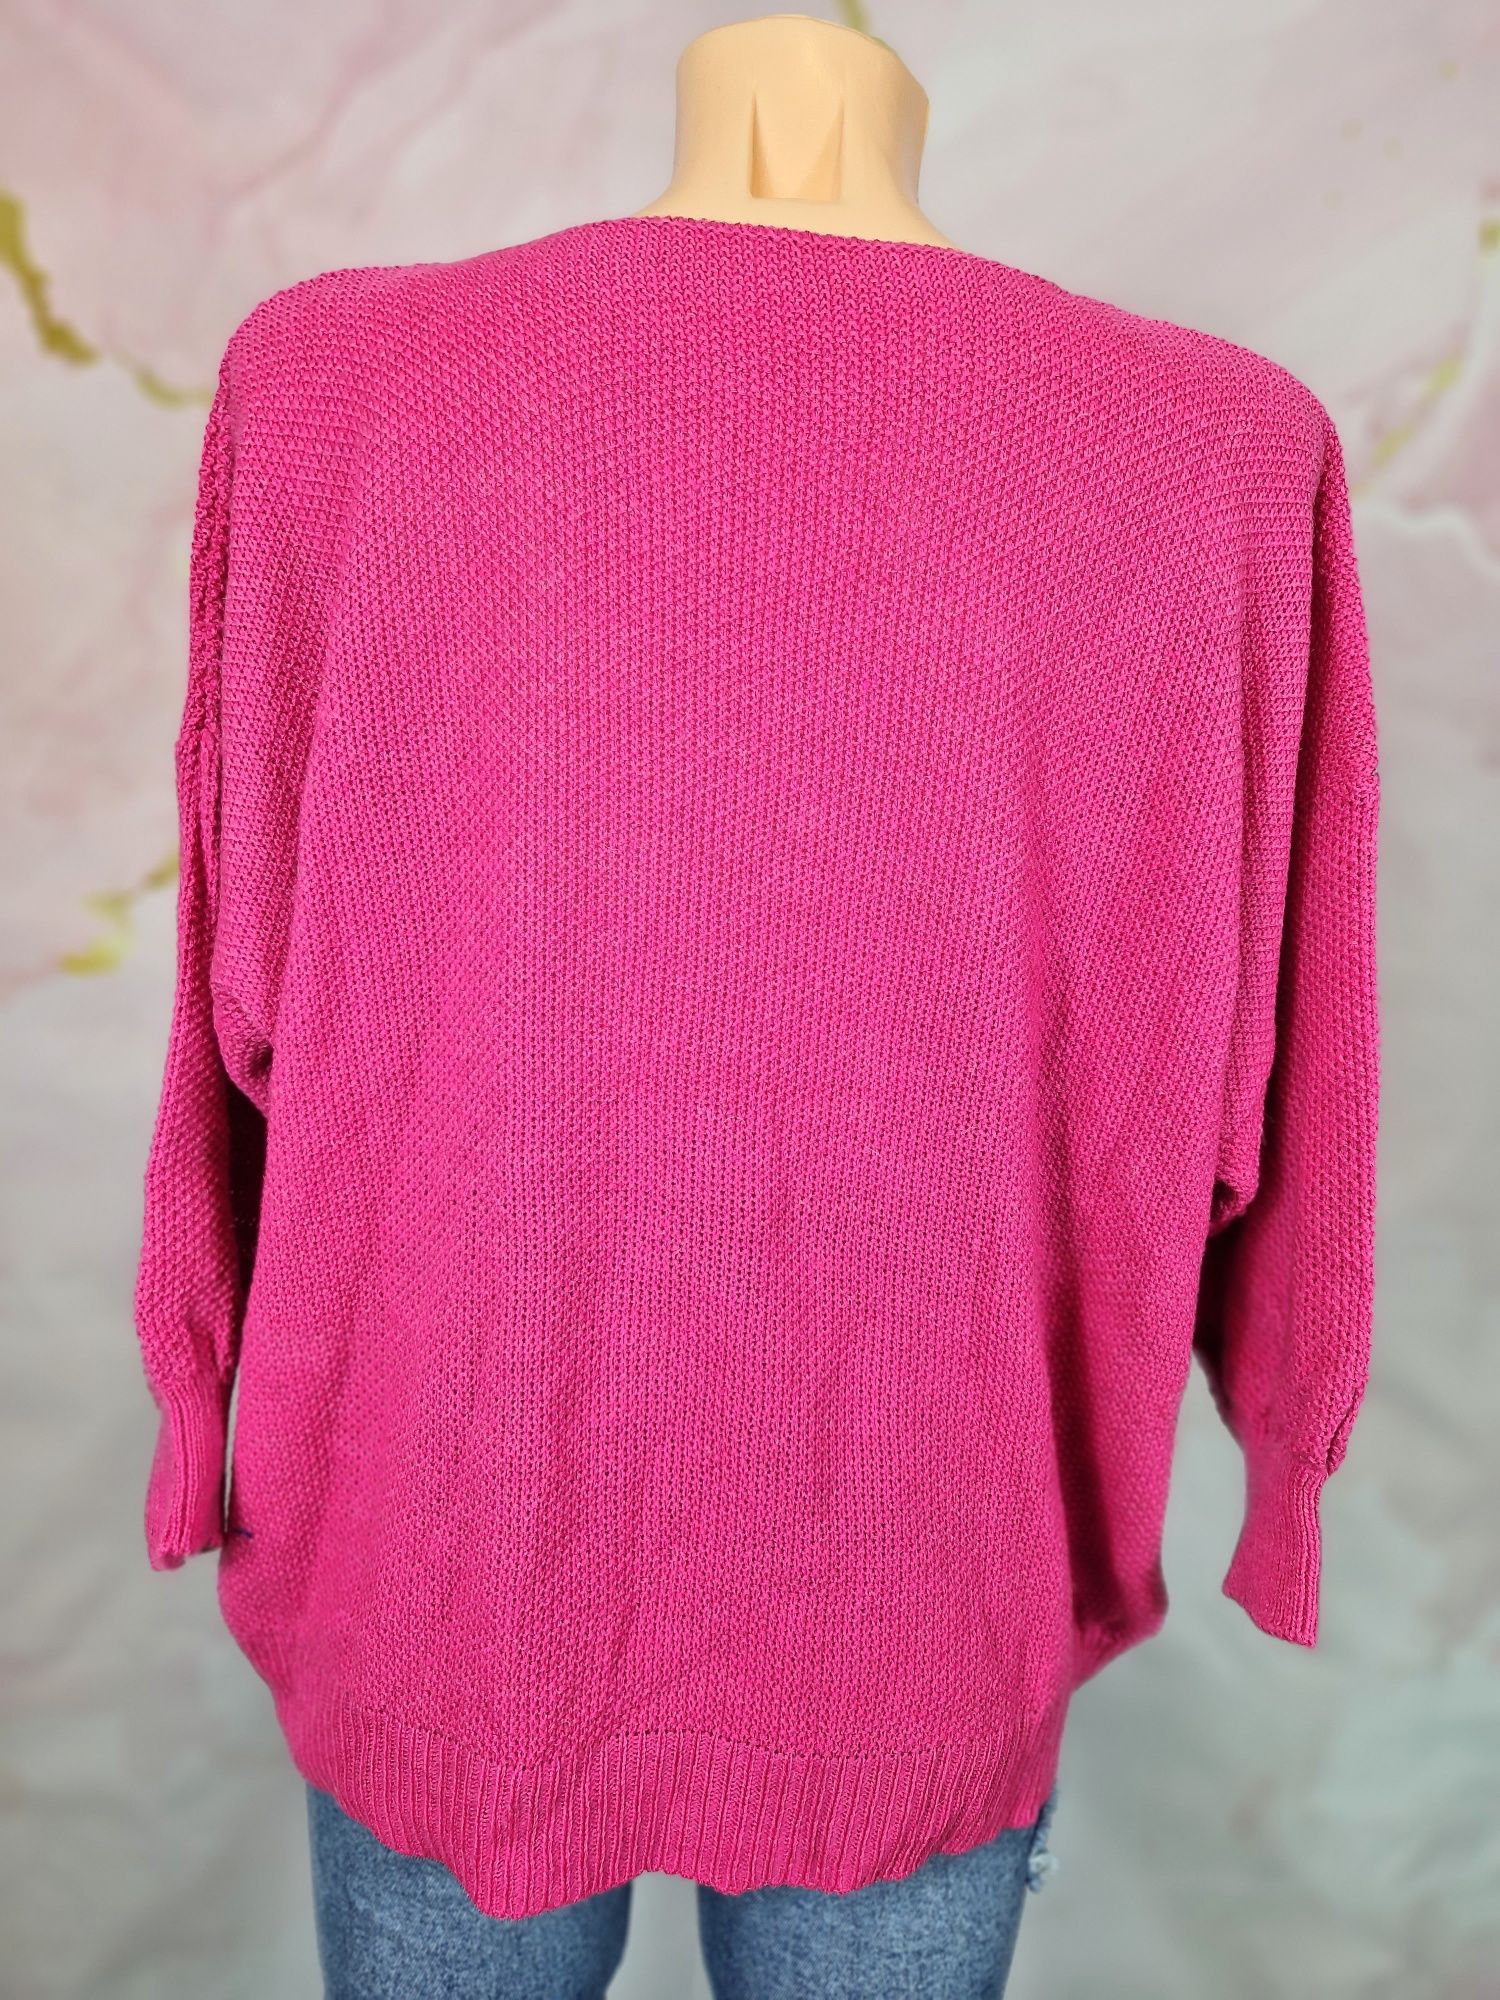 Sweter włoski różowy piękny duży rozmiar plus size made in italy XL